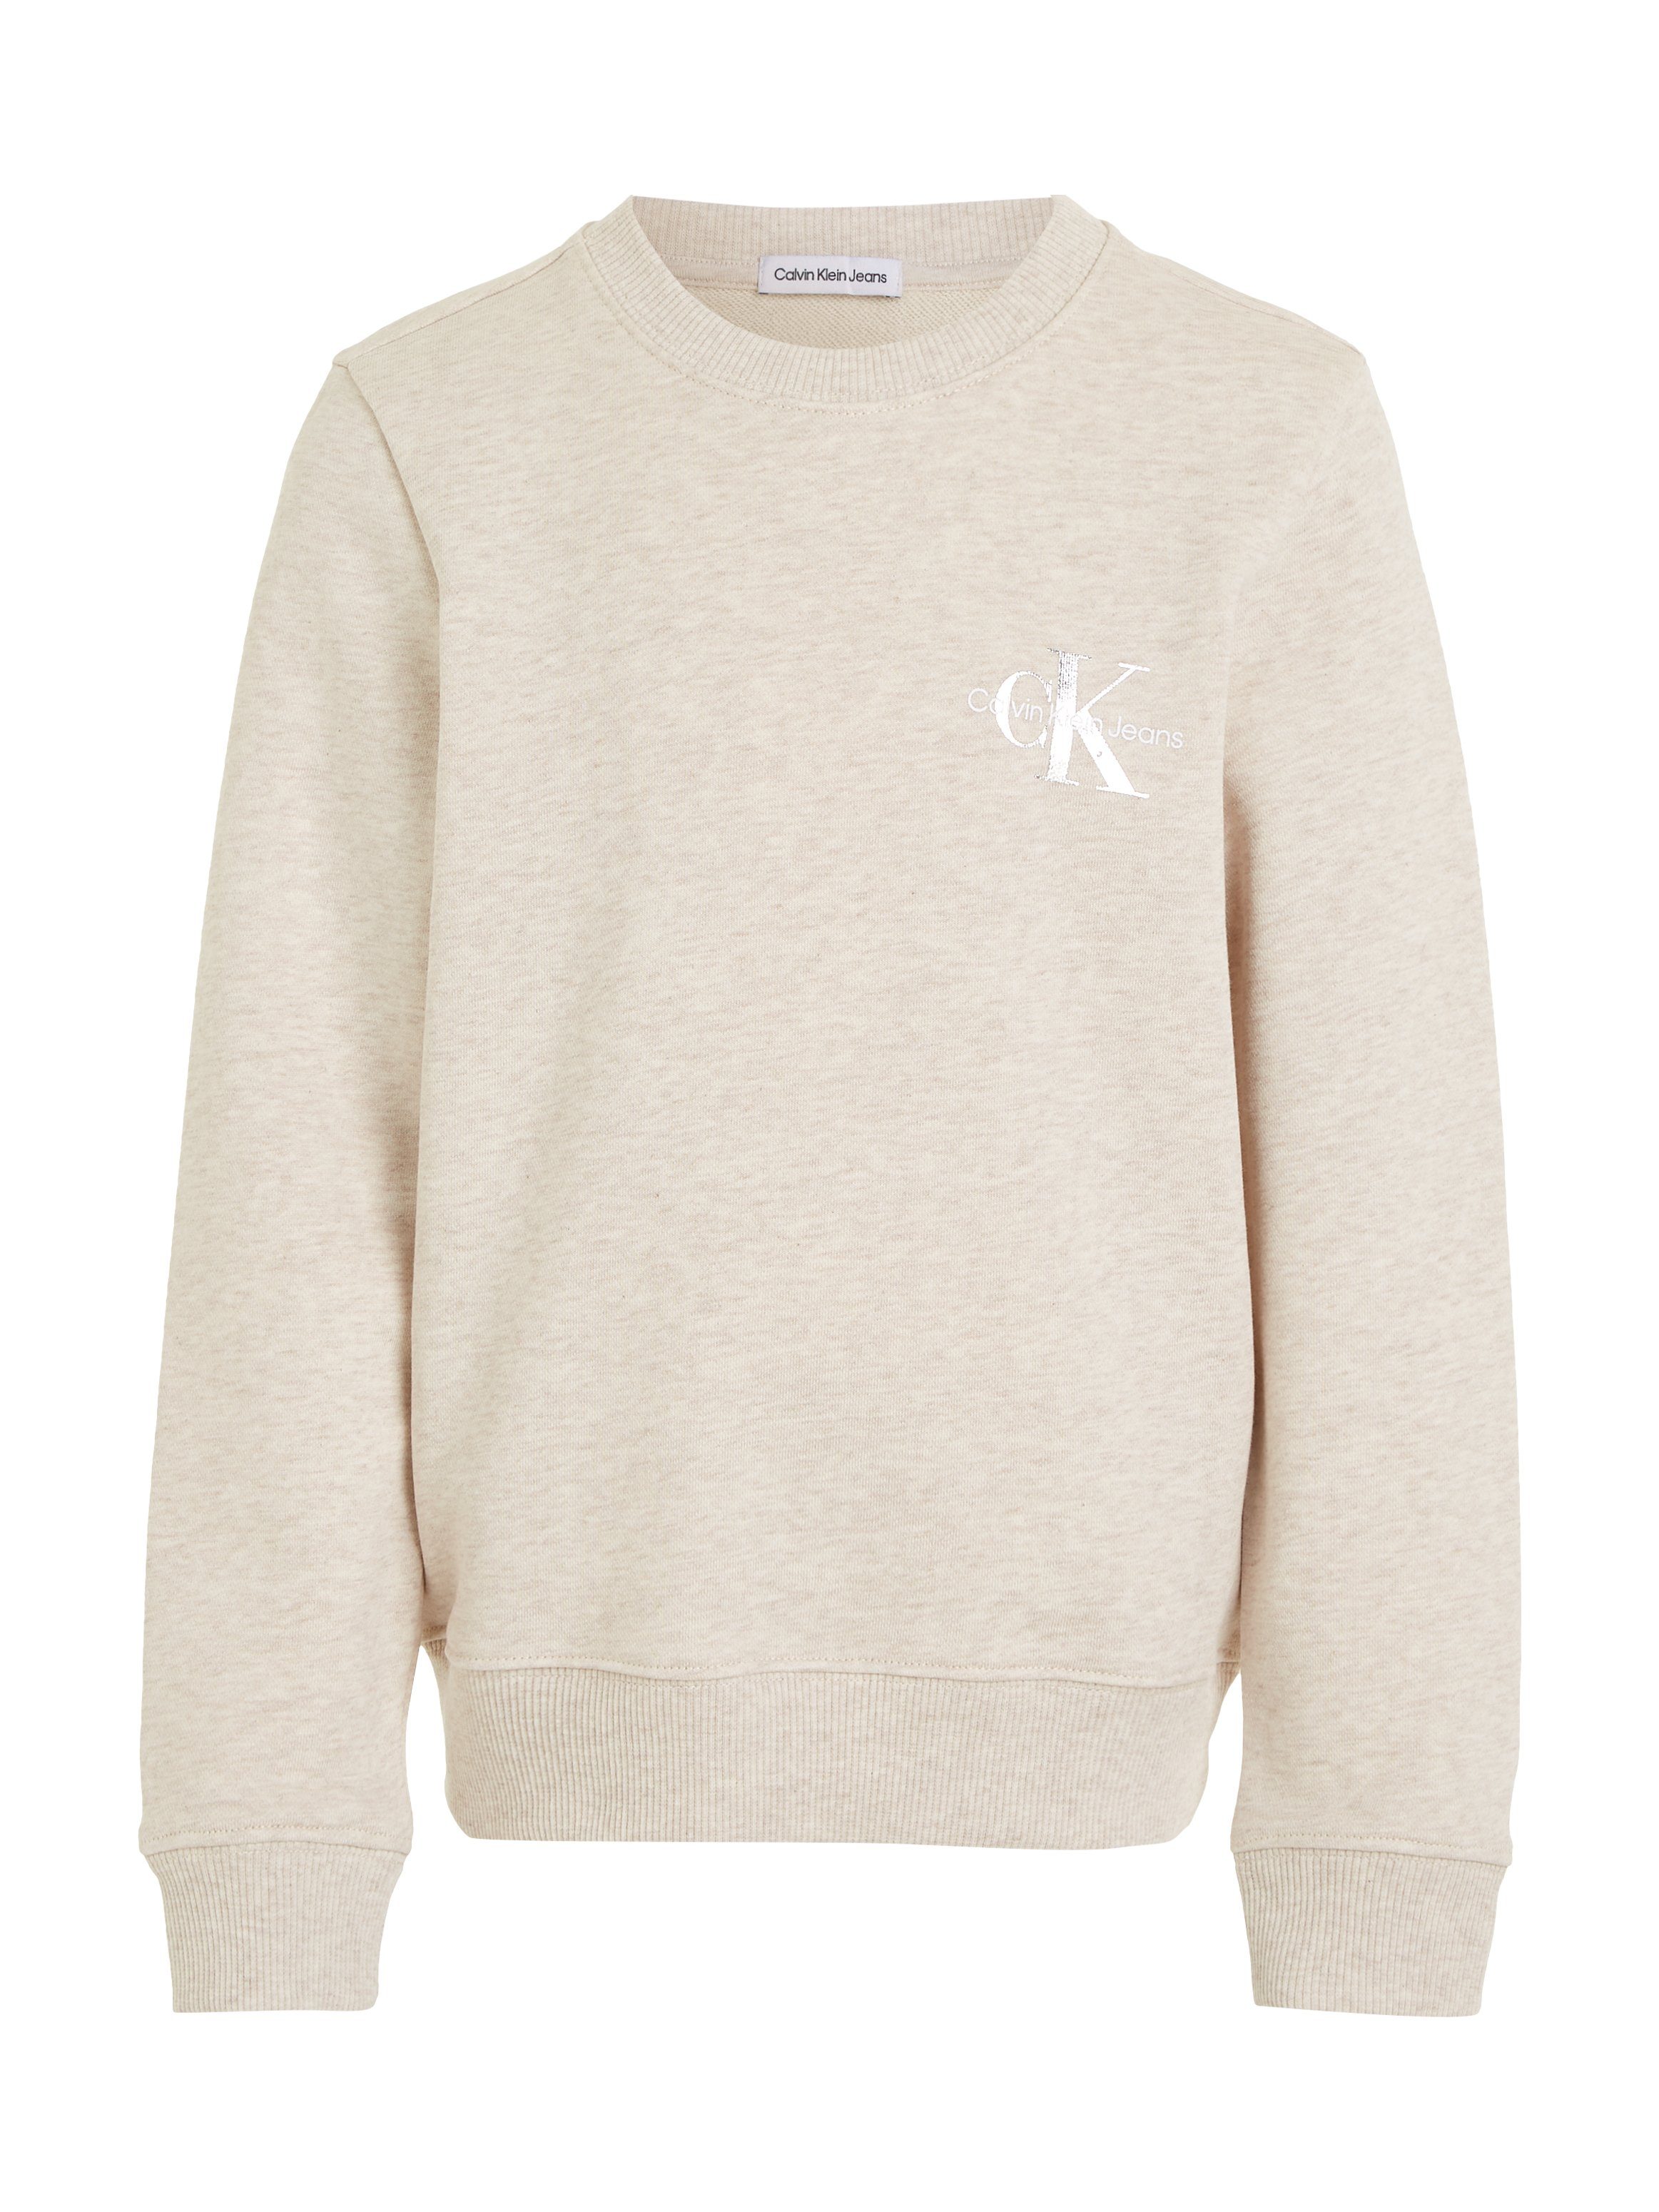 Calvin Klein Jeans Sweatshirt MONOGRAM SWEATSHIRT Logodruck CN mit Vanilla Heather